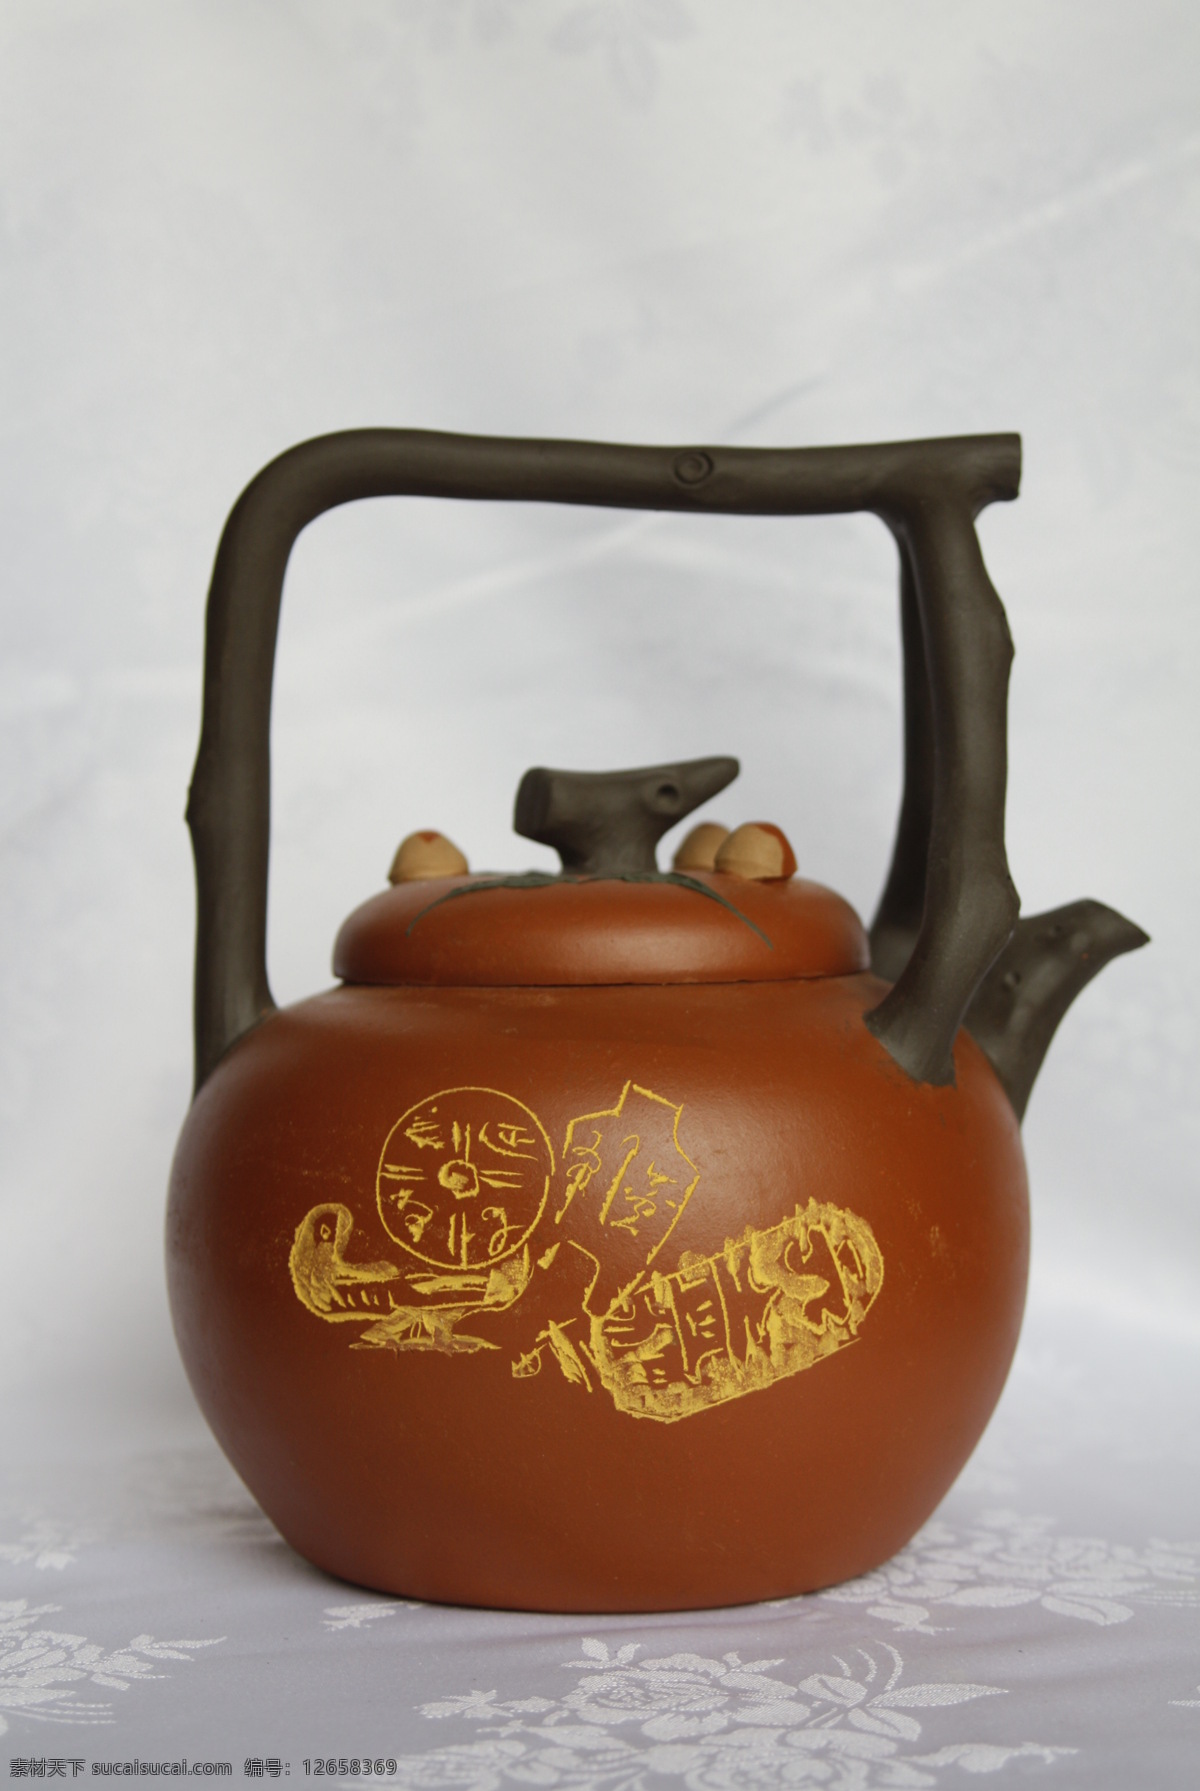 茶壶 中国元素 家具用品 茶壶照片 陶壶 紫砂壶 古典茶壶 泡茶 传统文化 文化艺术